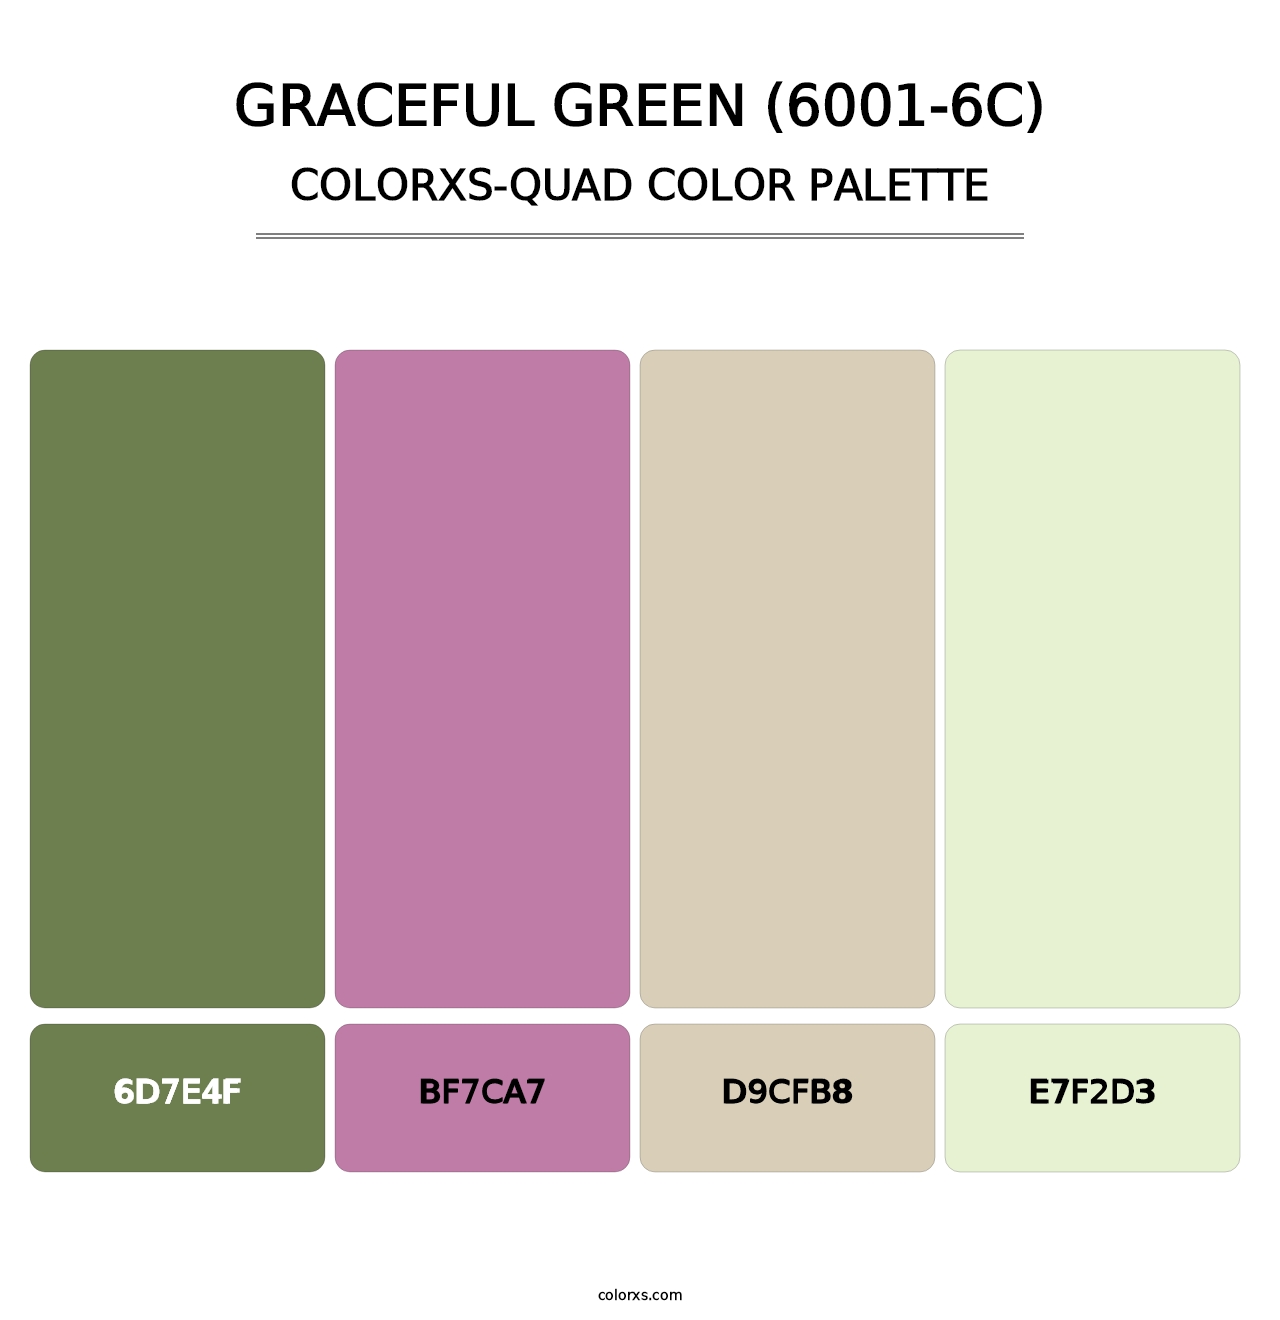 Graceful Green (6001-6C) - Colorxs Quad Palette